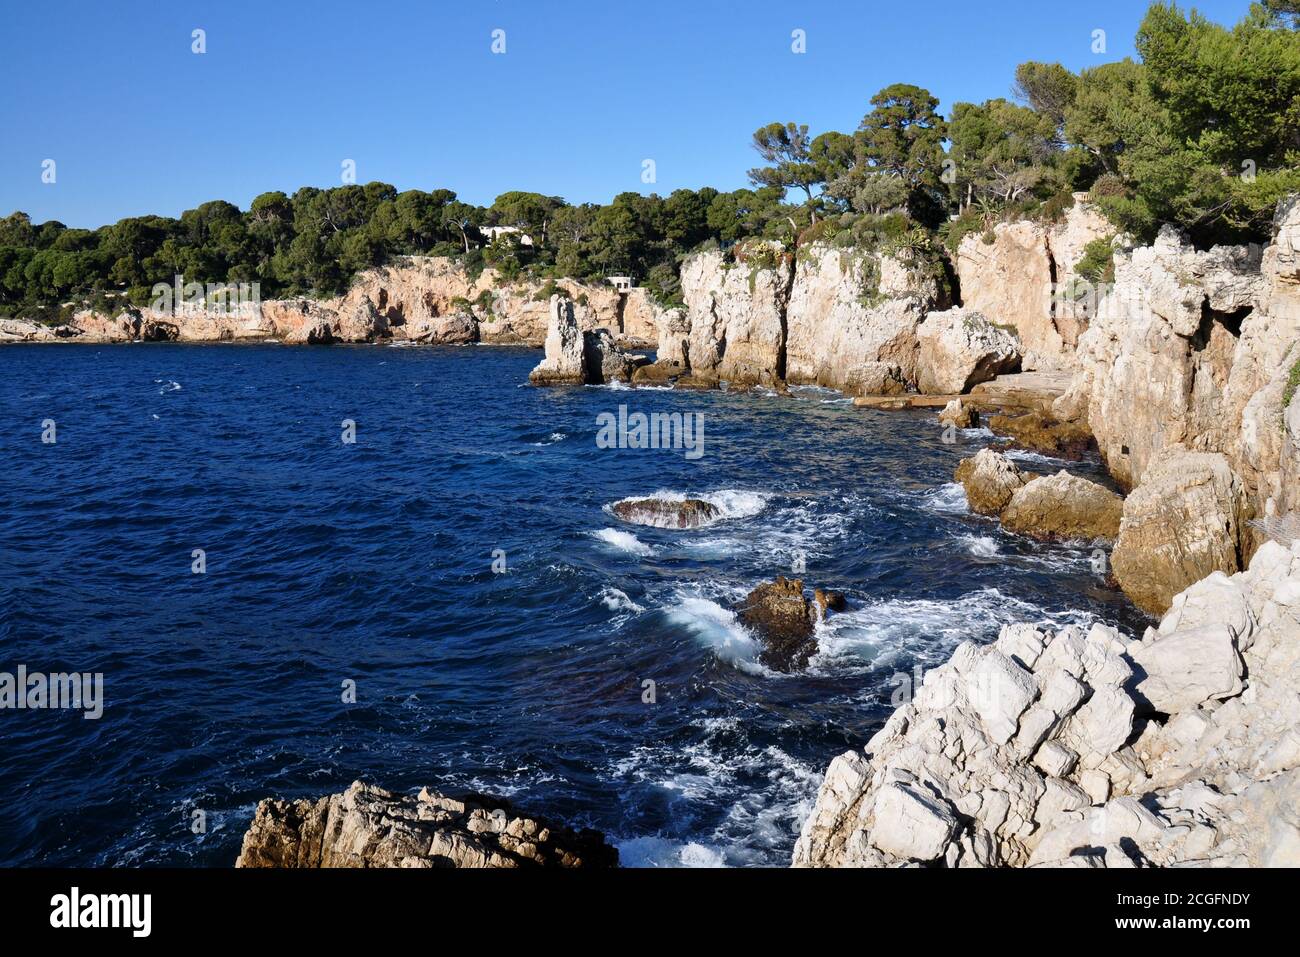 Francia, costa azzurra, Cap d'Antibes, la baia miliardaria è accessibile dal sentiero costiero che parte dalla baia con una spiaggia di ciottoli. Foto Stock